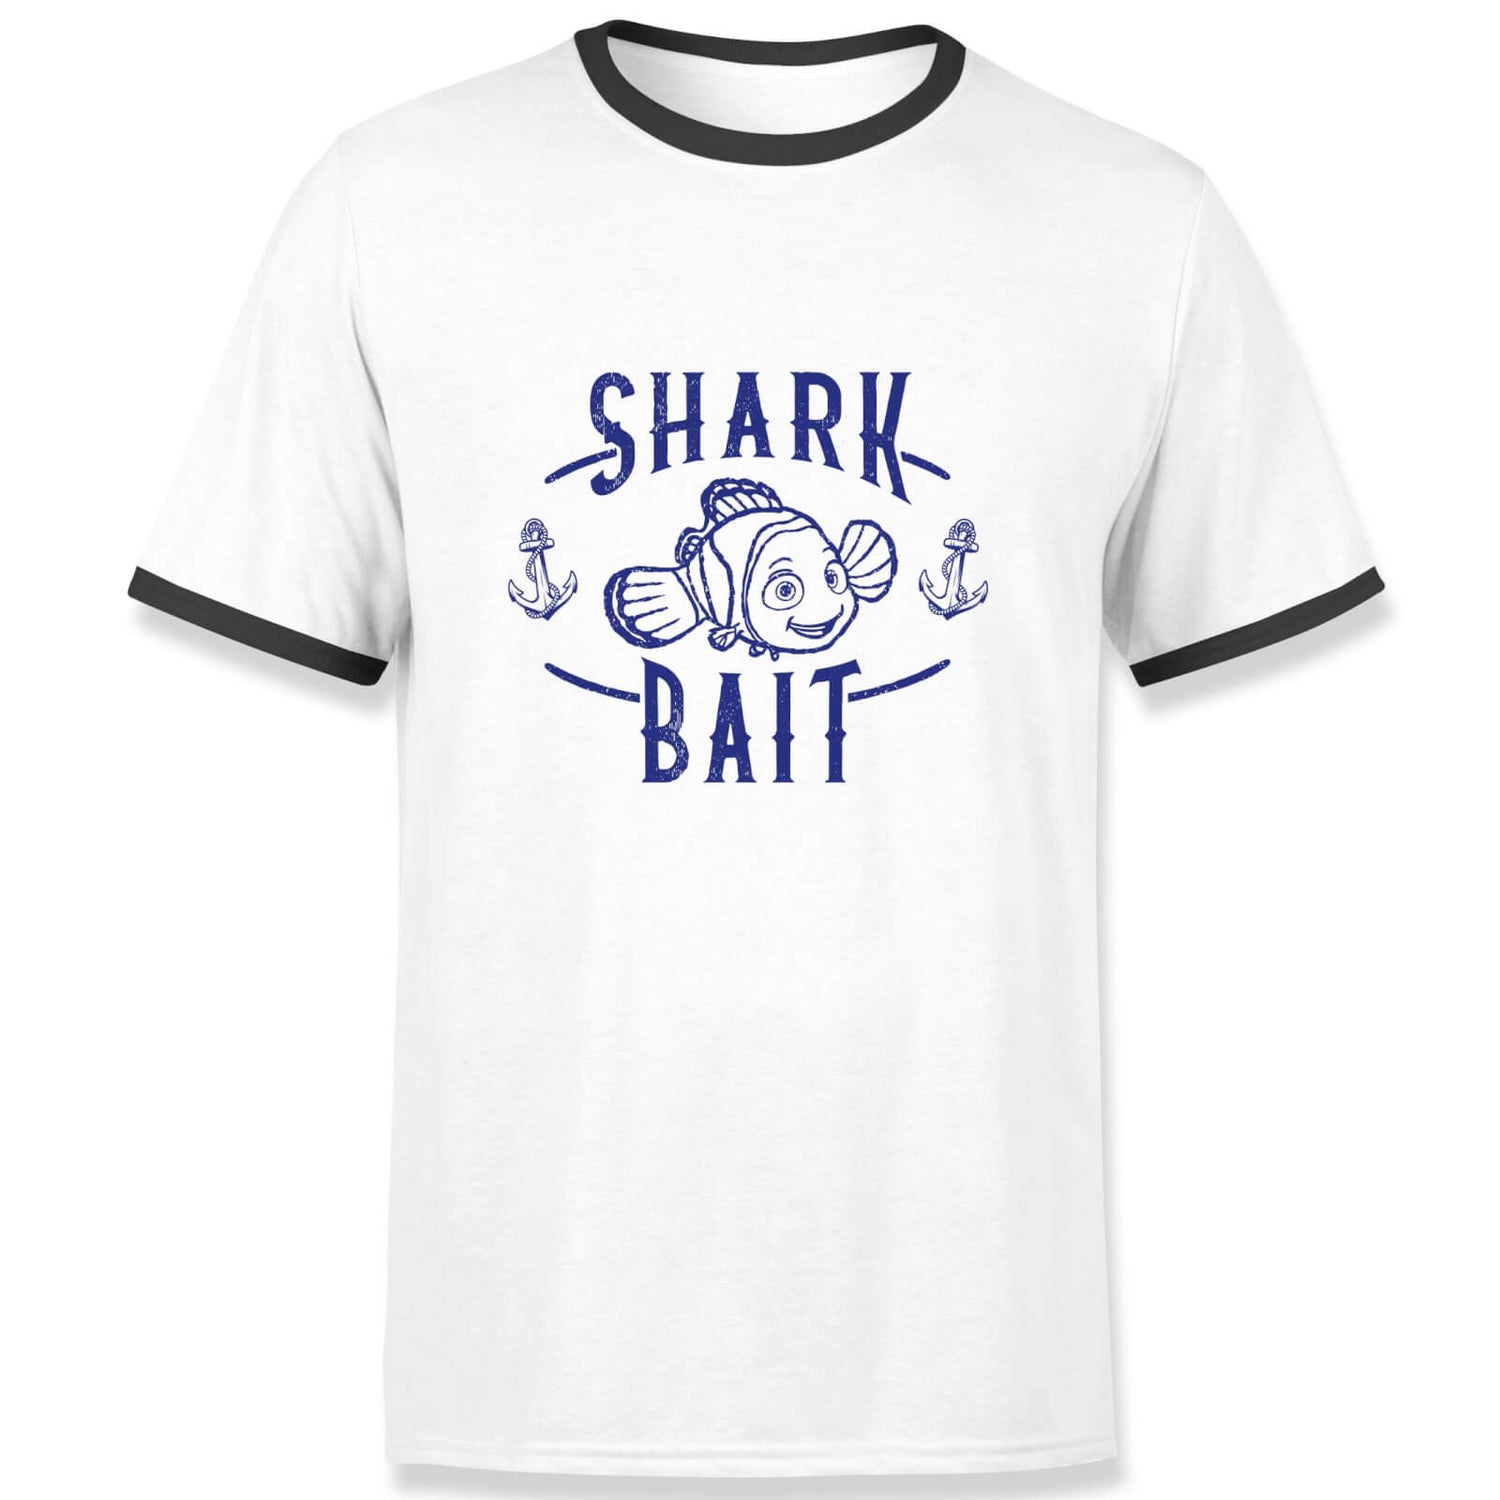 Finding Nemo Shark Bait Ringer T-Shirt - White Black